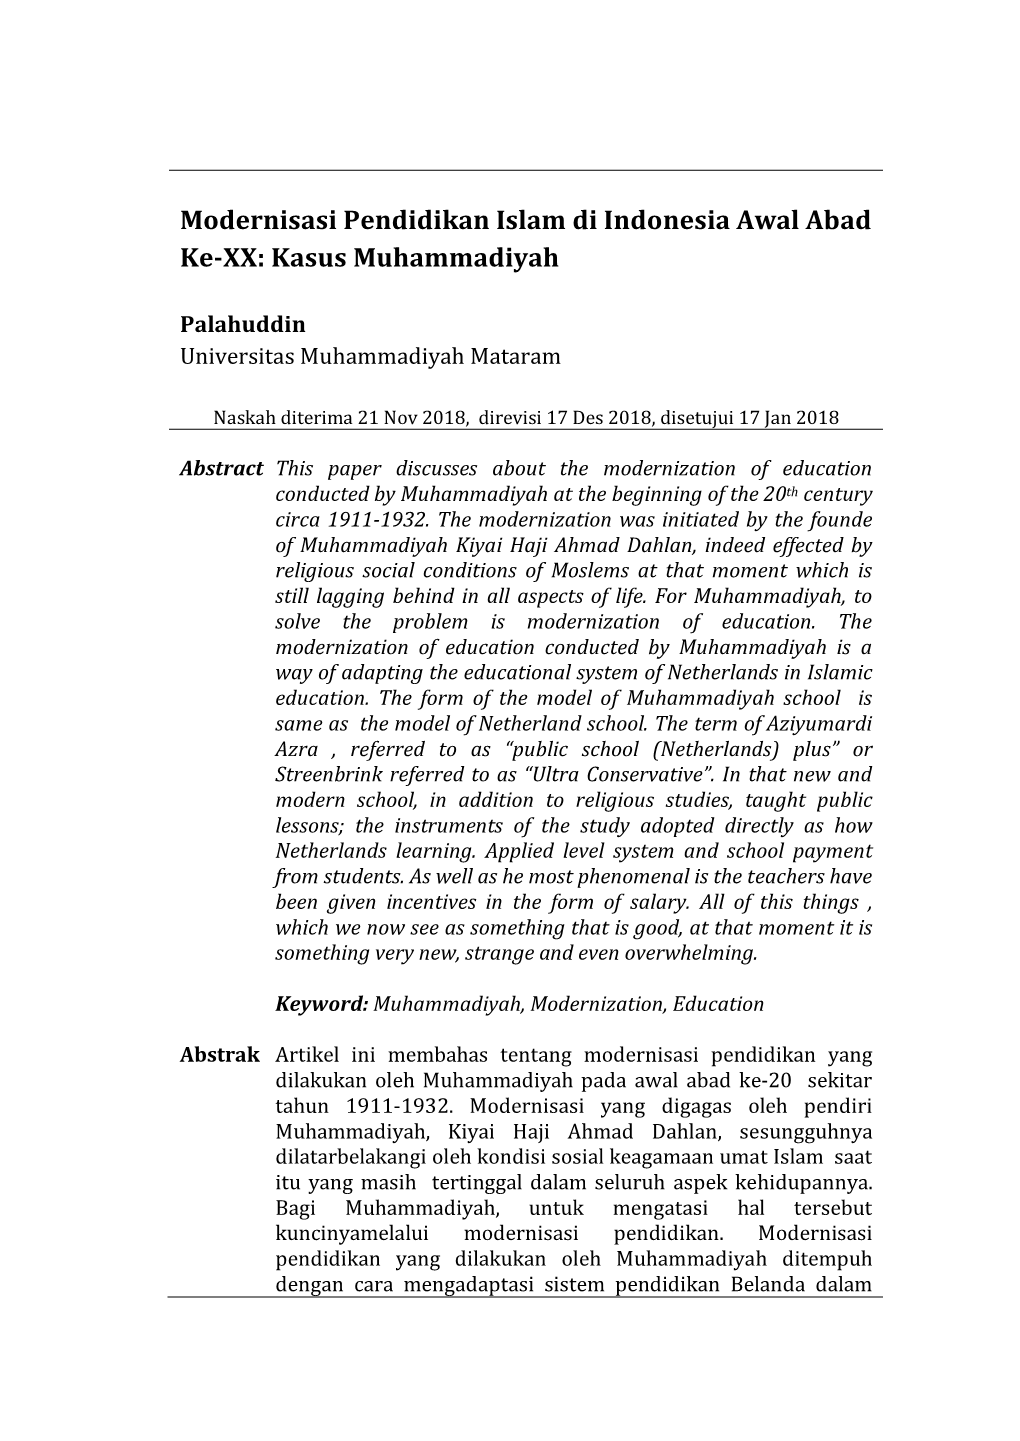 Modernisasi Pendidikan Islam Di Indonesia Awal Abad Ke-XX: Kasus Muhammadiyah